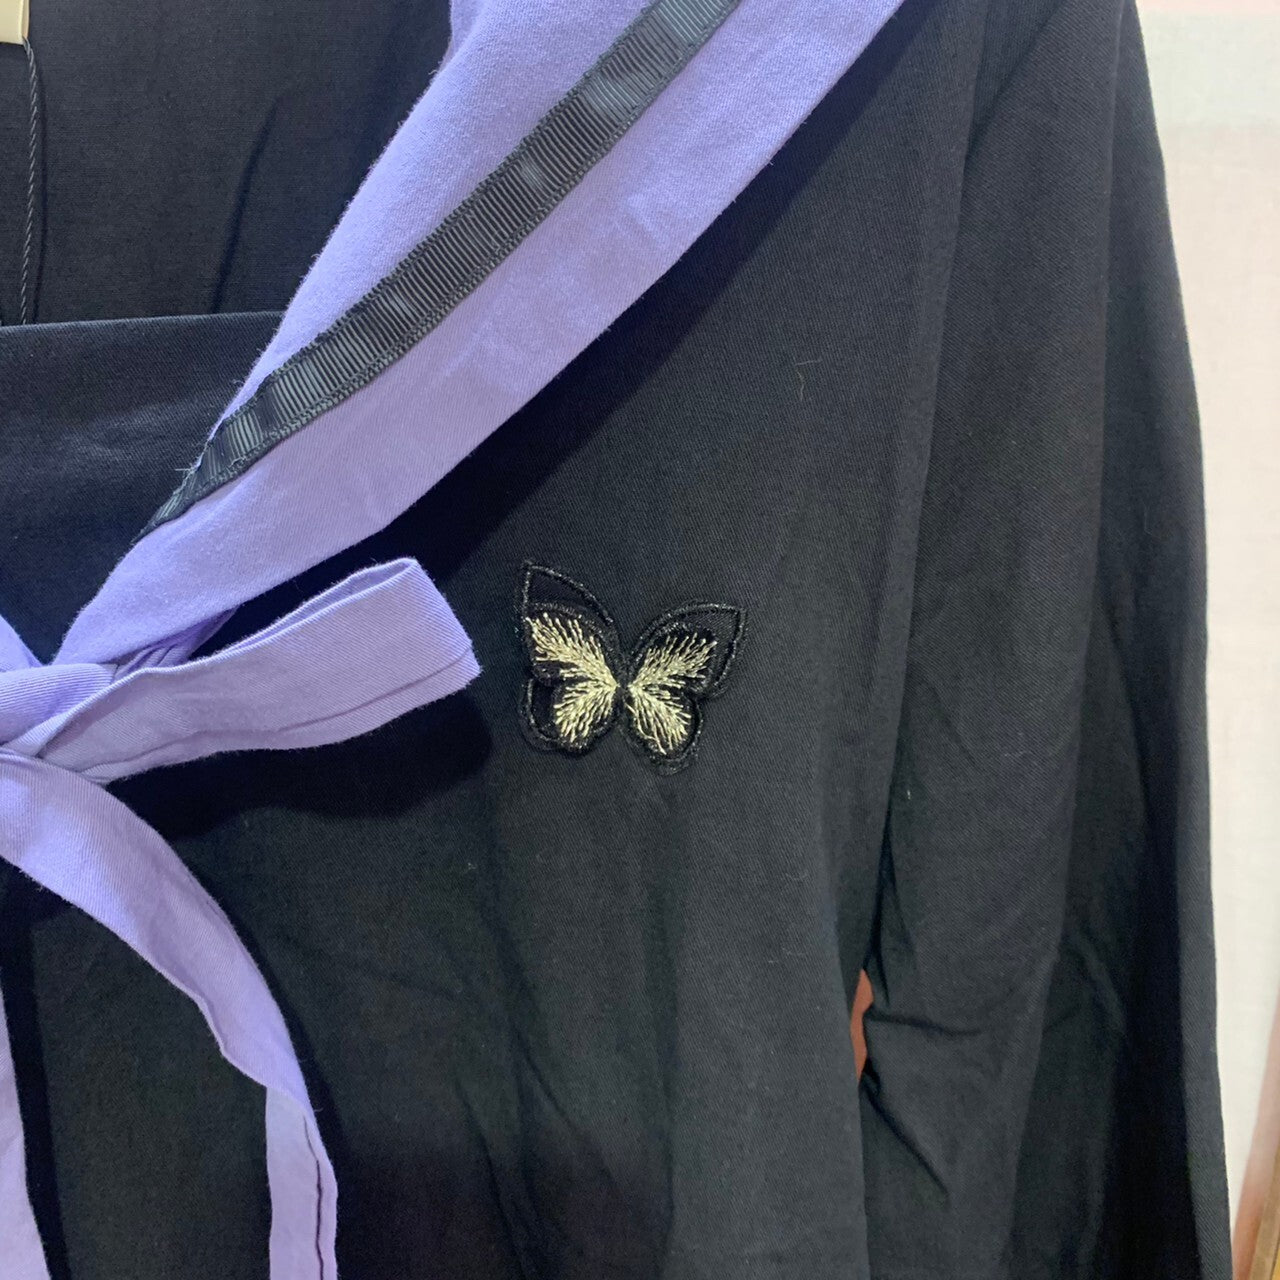 Butterfly patch bowtie sailor dress BLACK